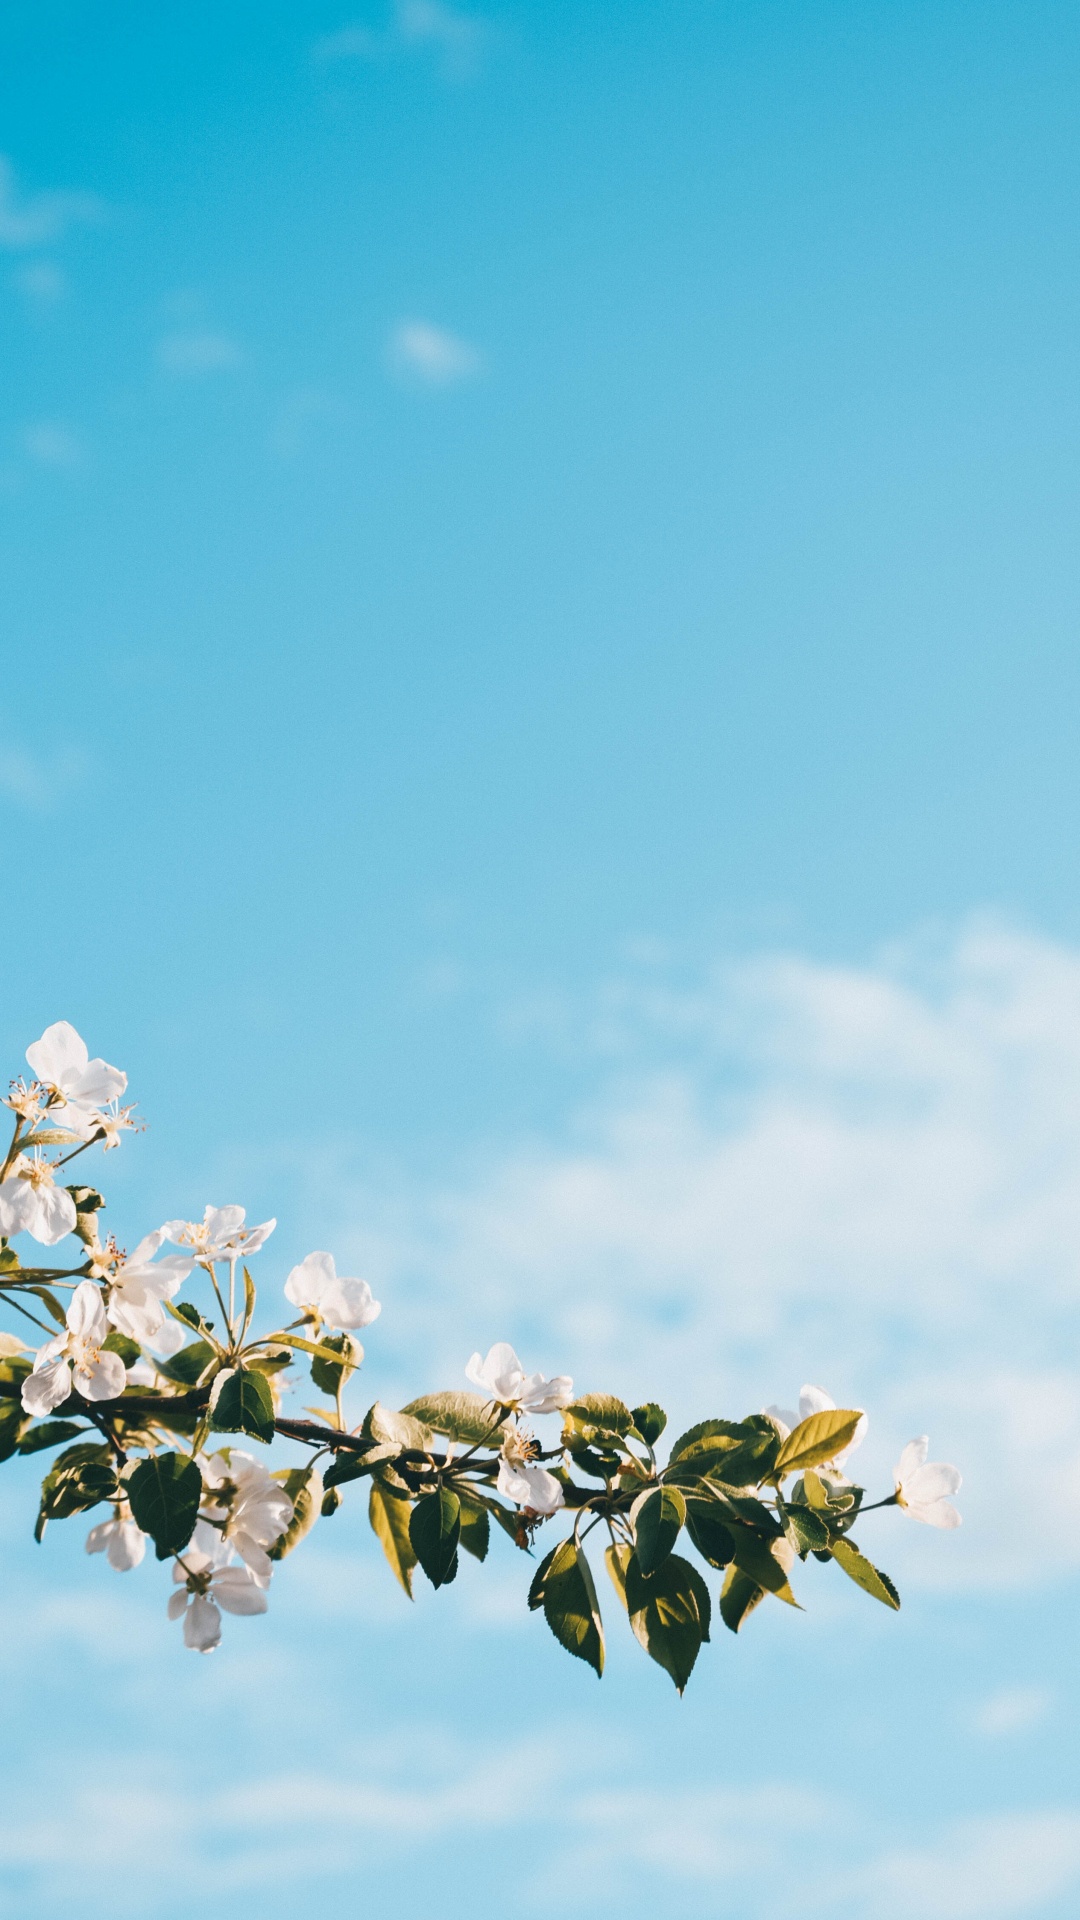 Flor de Cerezo Blanca Bajo un Cielo Azul Durante el Día. Wallpaper in 1080x1920 Resolution